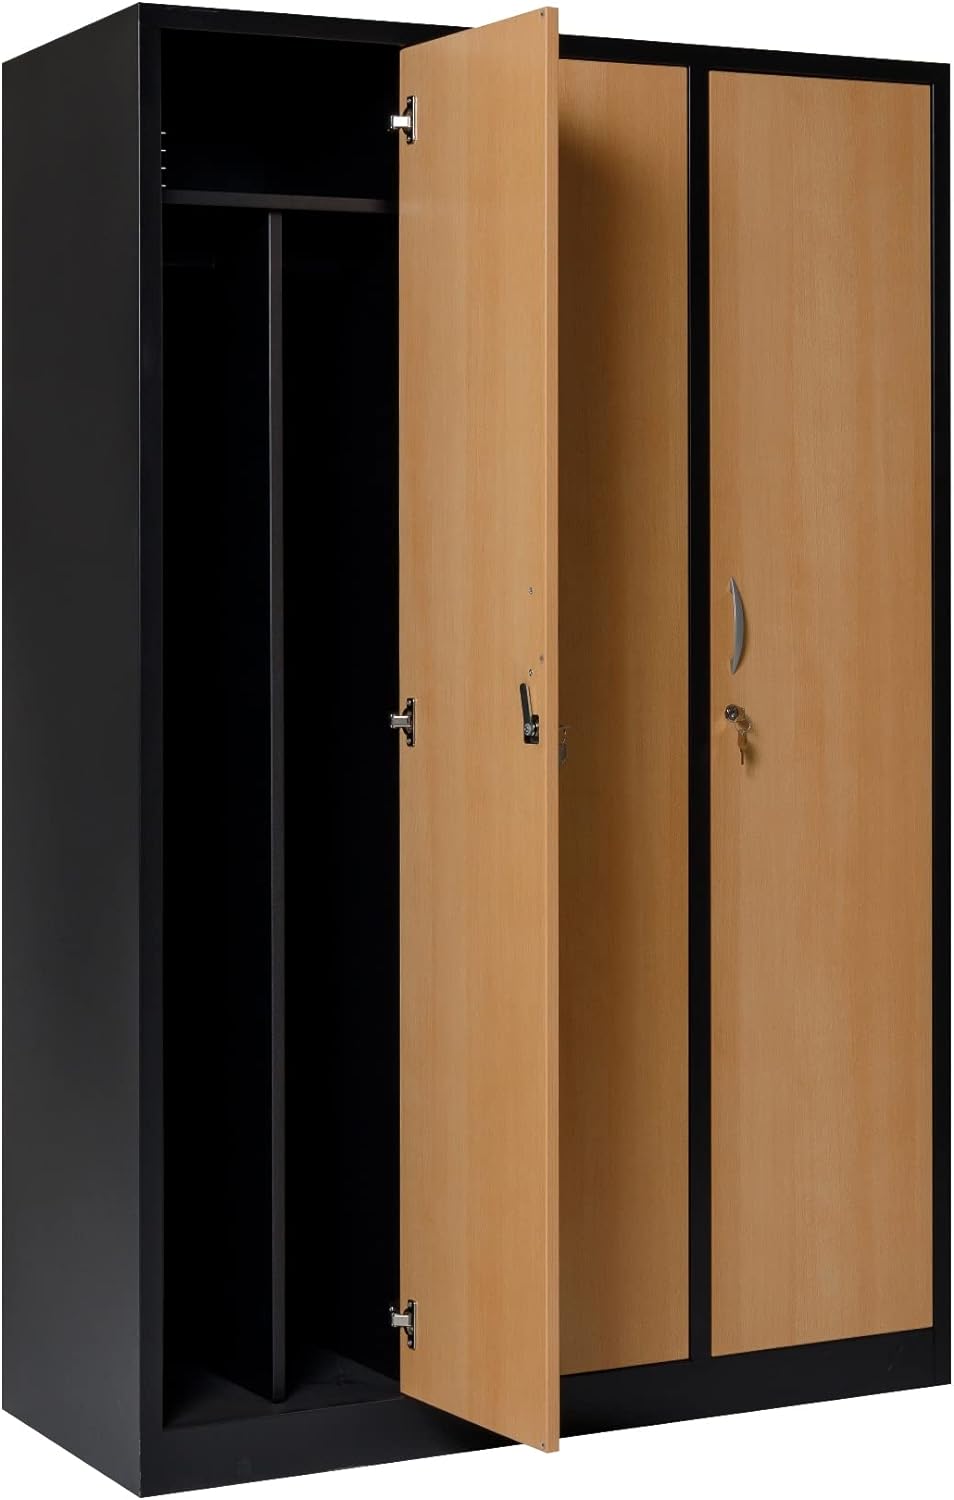 Garderobenschrank Abteilbreite 40 cm ganze Türen mit schwarz/weiß Trennung, 180 cm x 120 cm x 50 cm / schwarz / Buche RAL 9005